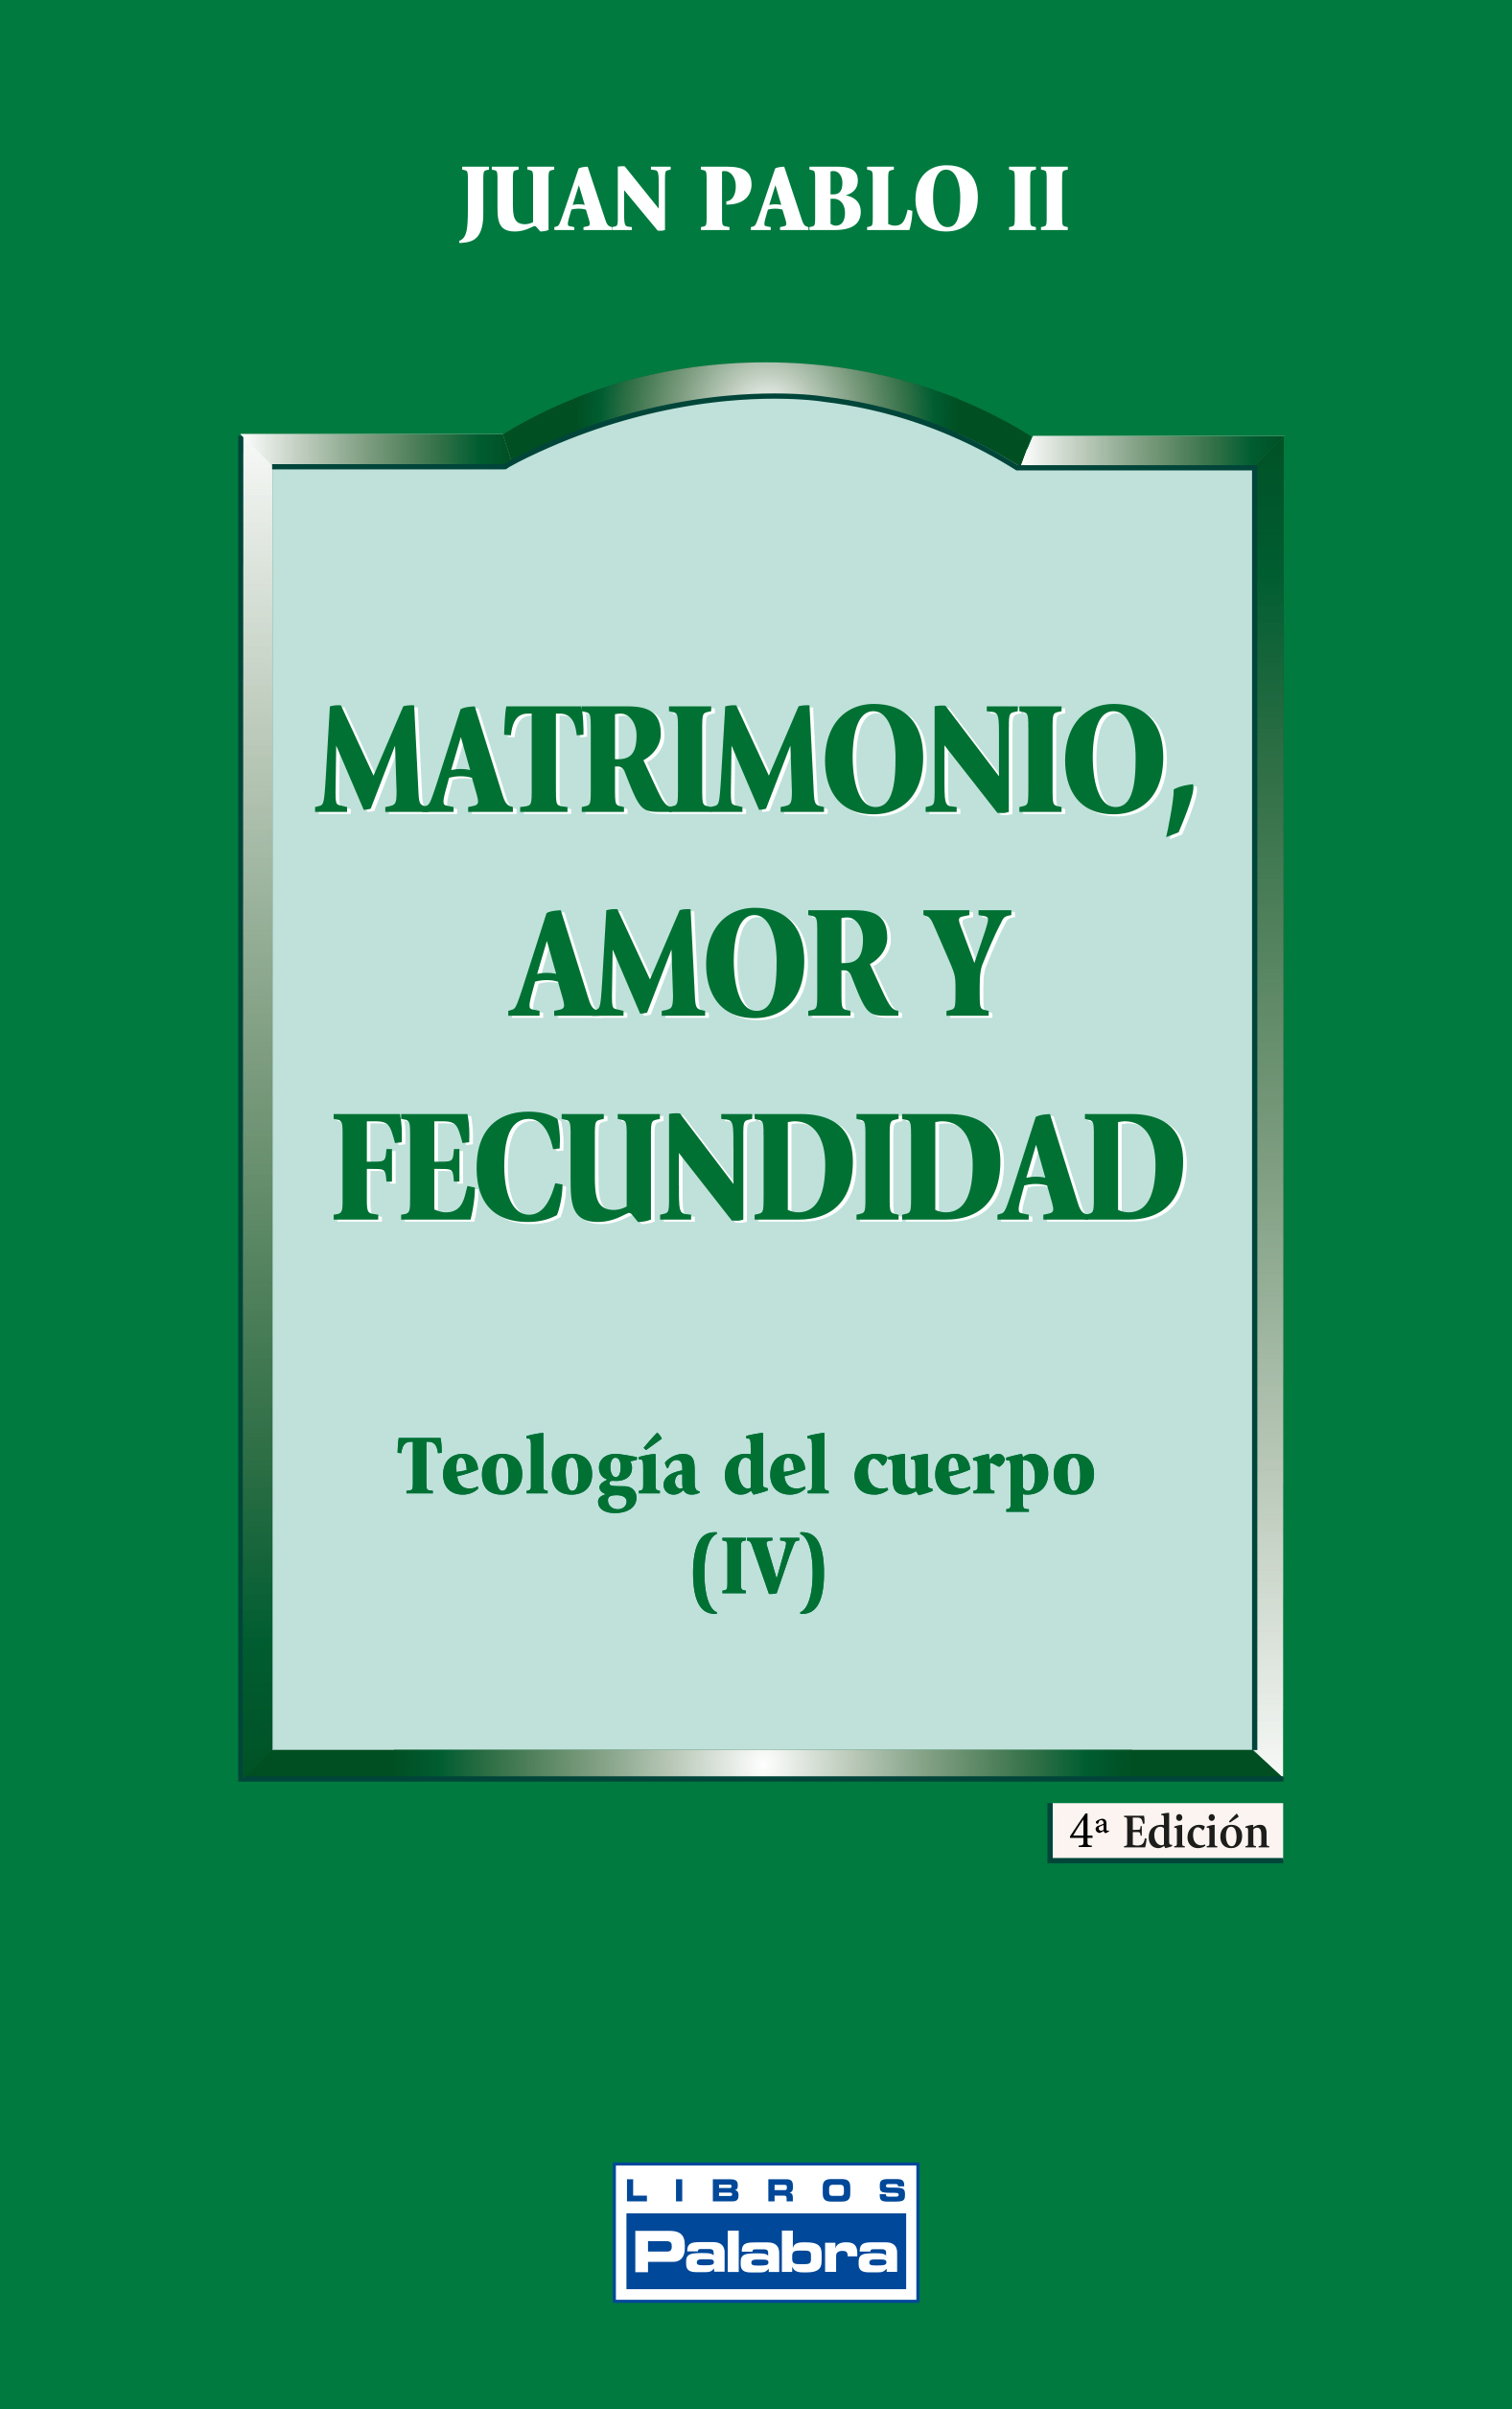 bolso alto imagina Libro: Matrimonio, amor y fecundidad de Juan Pablo II